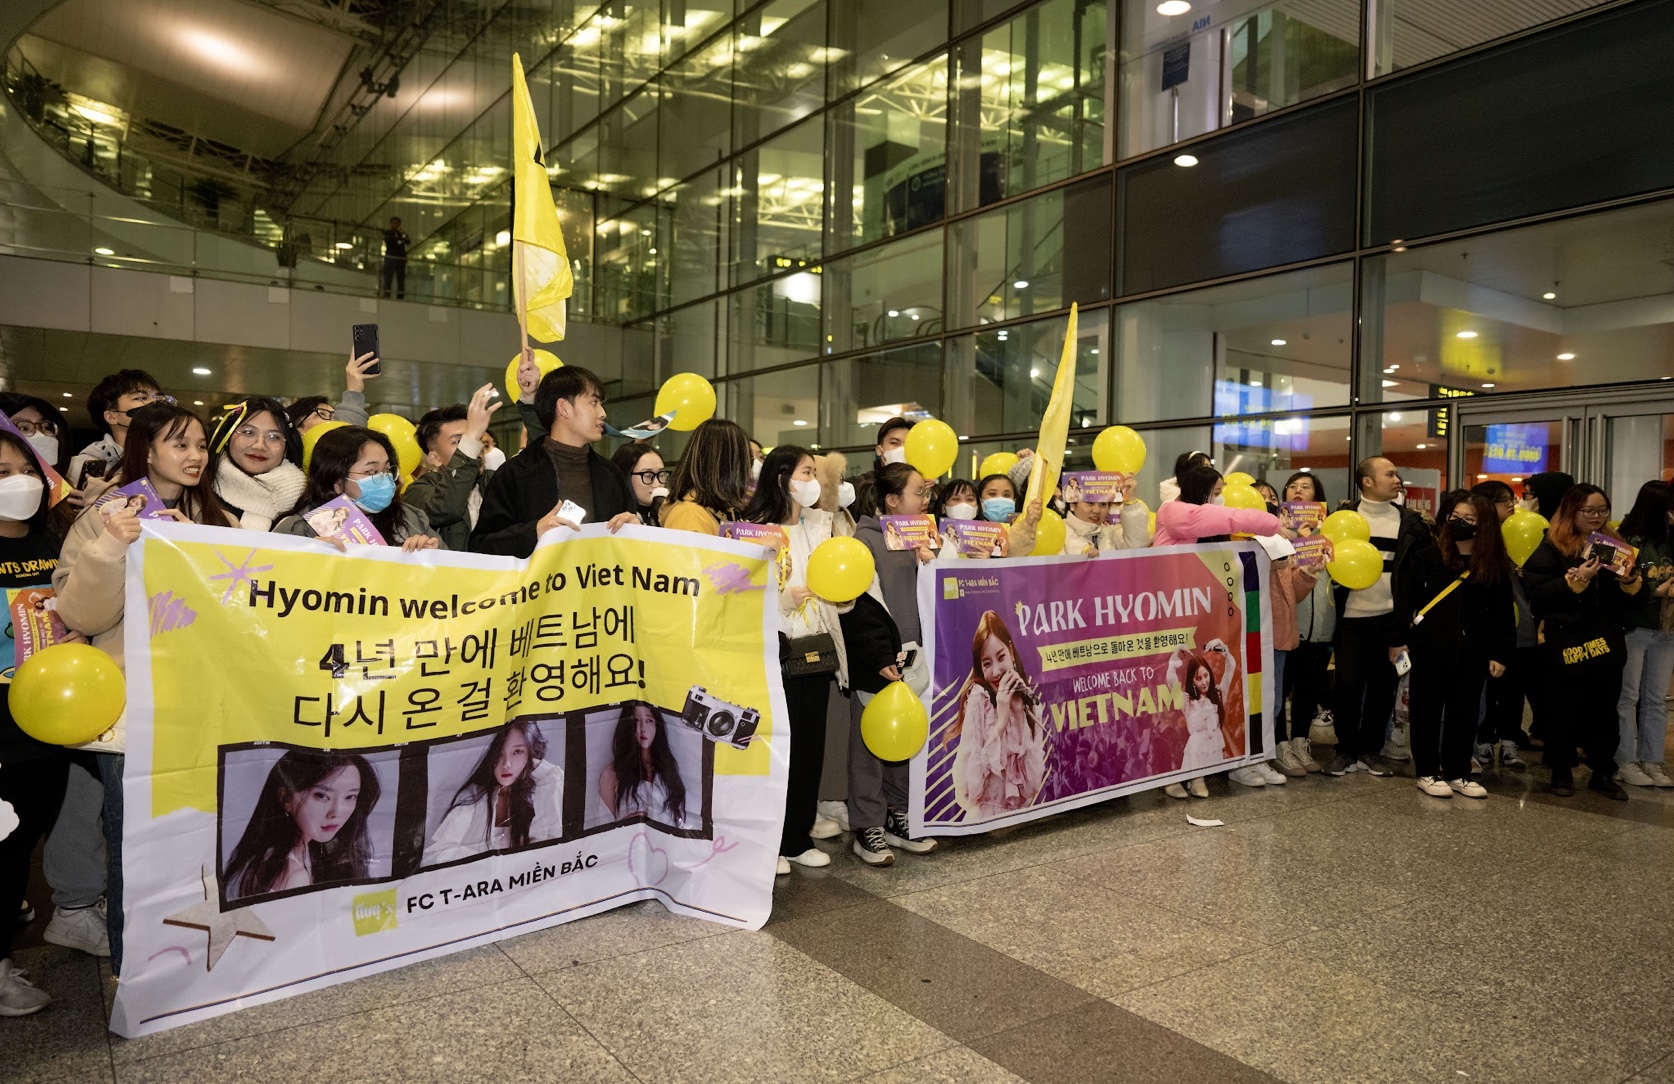 Dù thời tiết lạnh giá, hàng trăm người hâm mộ Việt Nam vẫn ra sân bay lúc nửa đêm để đón Hyomin (T-ara)  - Ảnh 3.